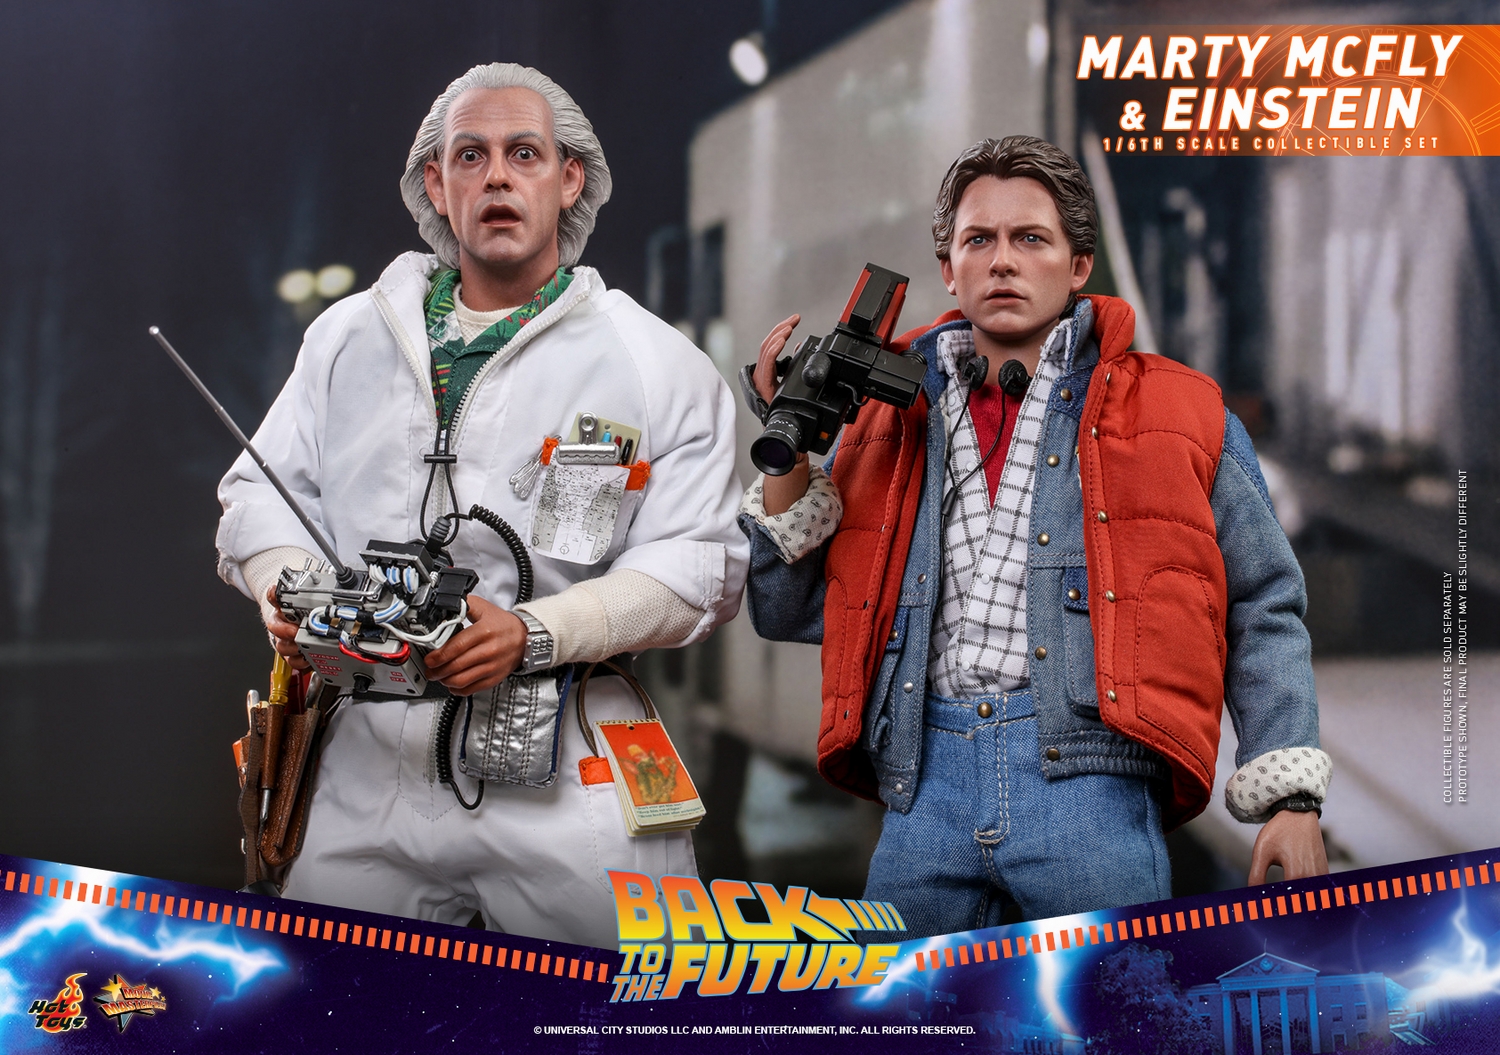 Hot Toys - BTTFI - Marty McFly and Einstein collectible set_PR14.jpg